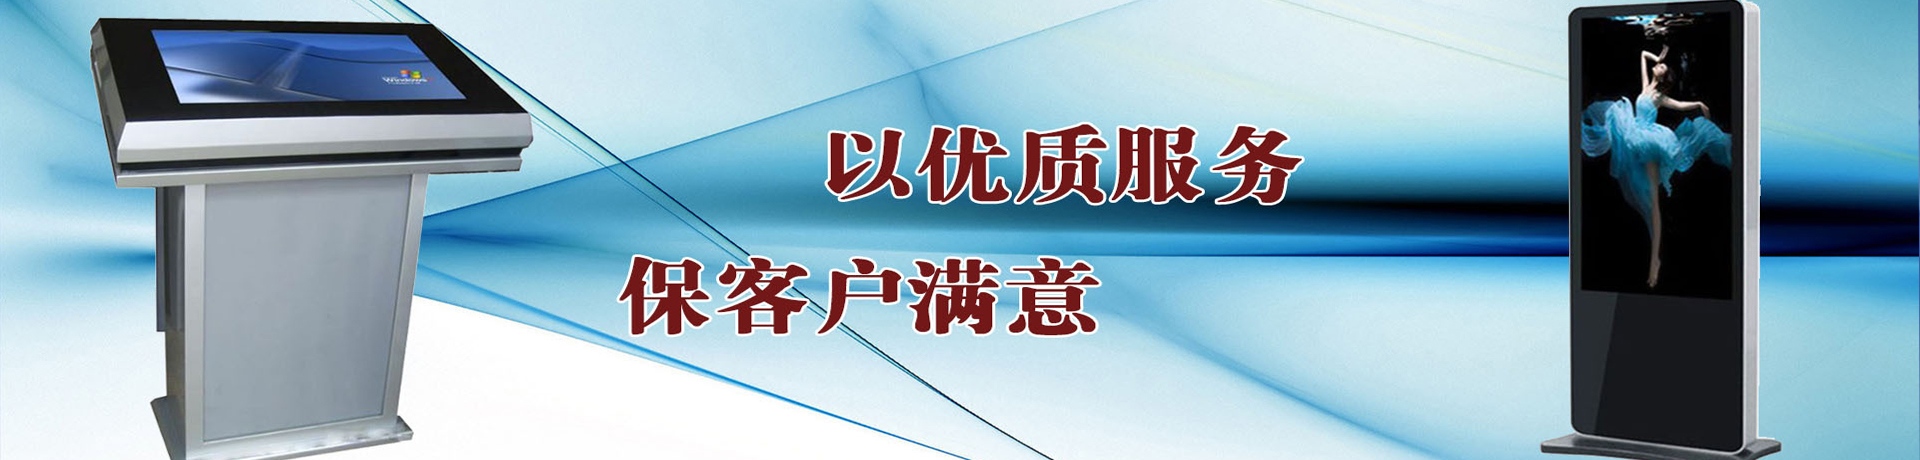 青县欣派电子机箱制造有限公司